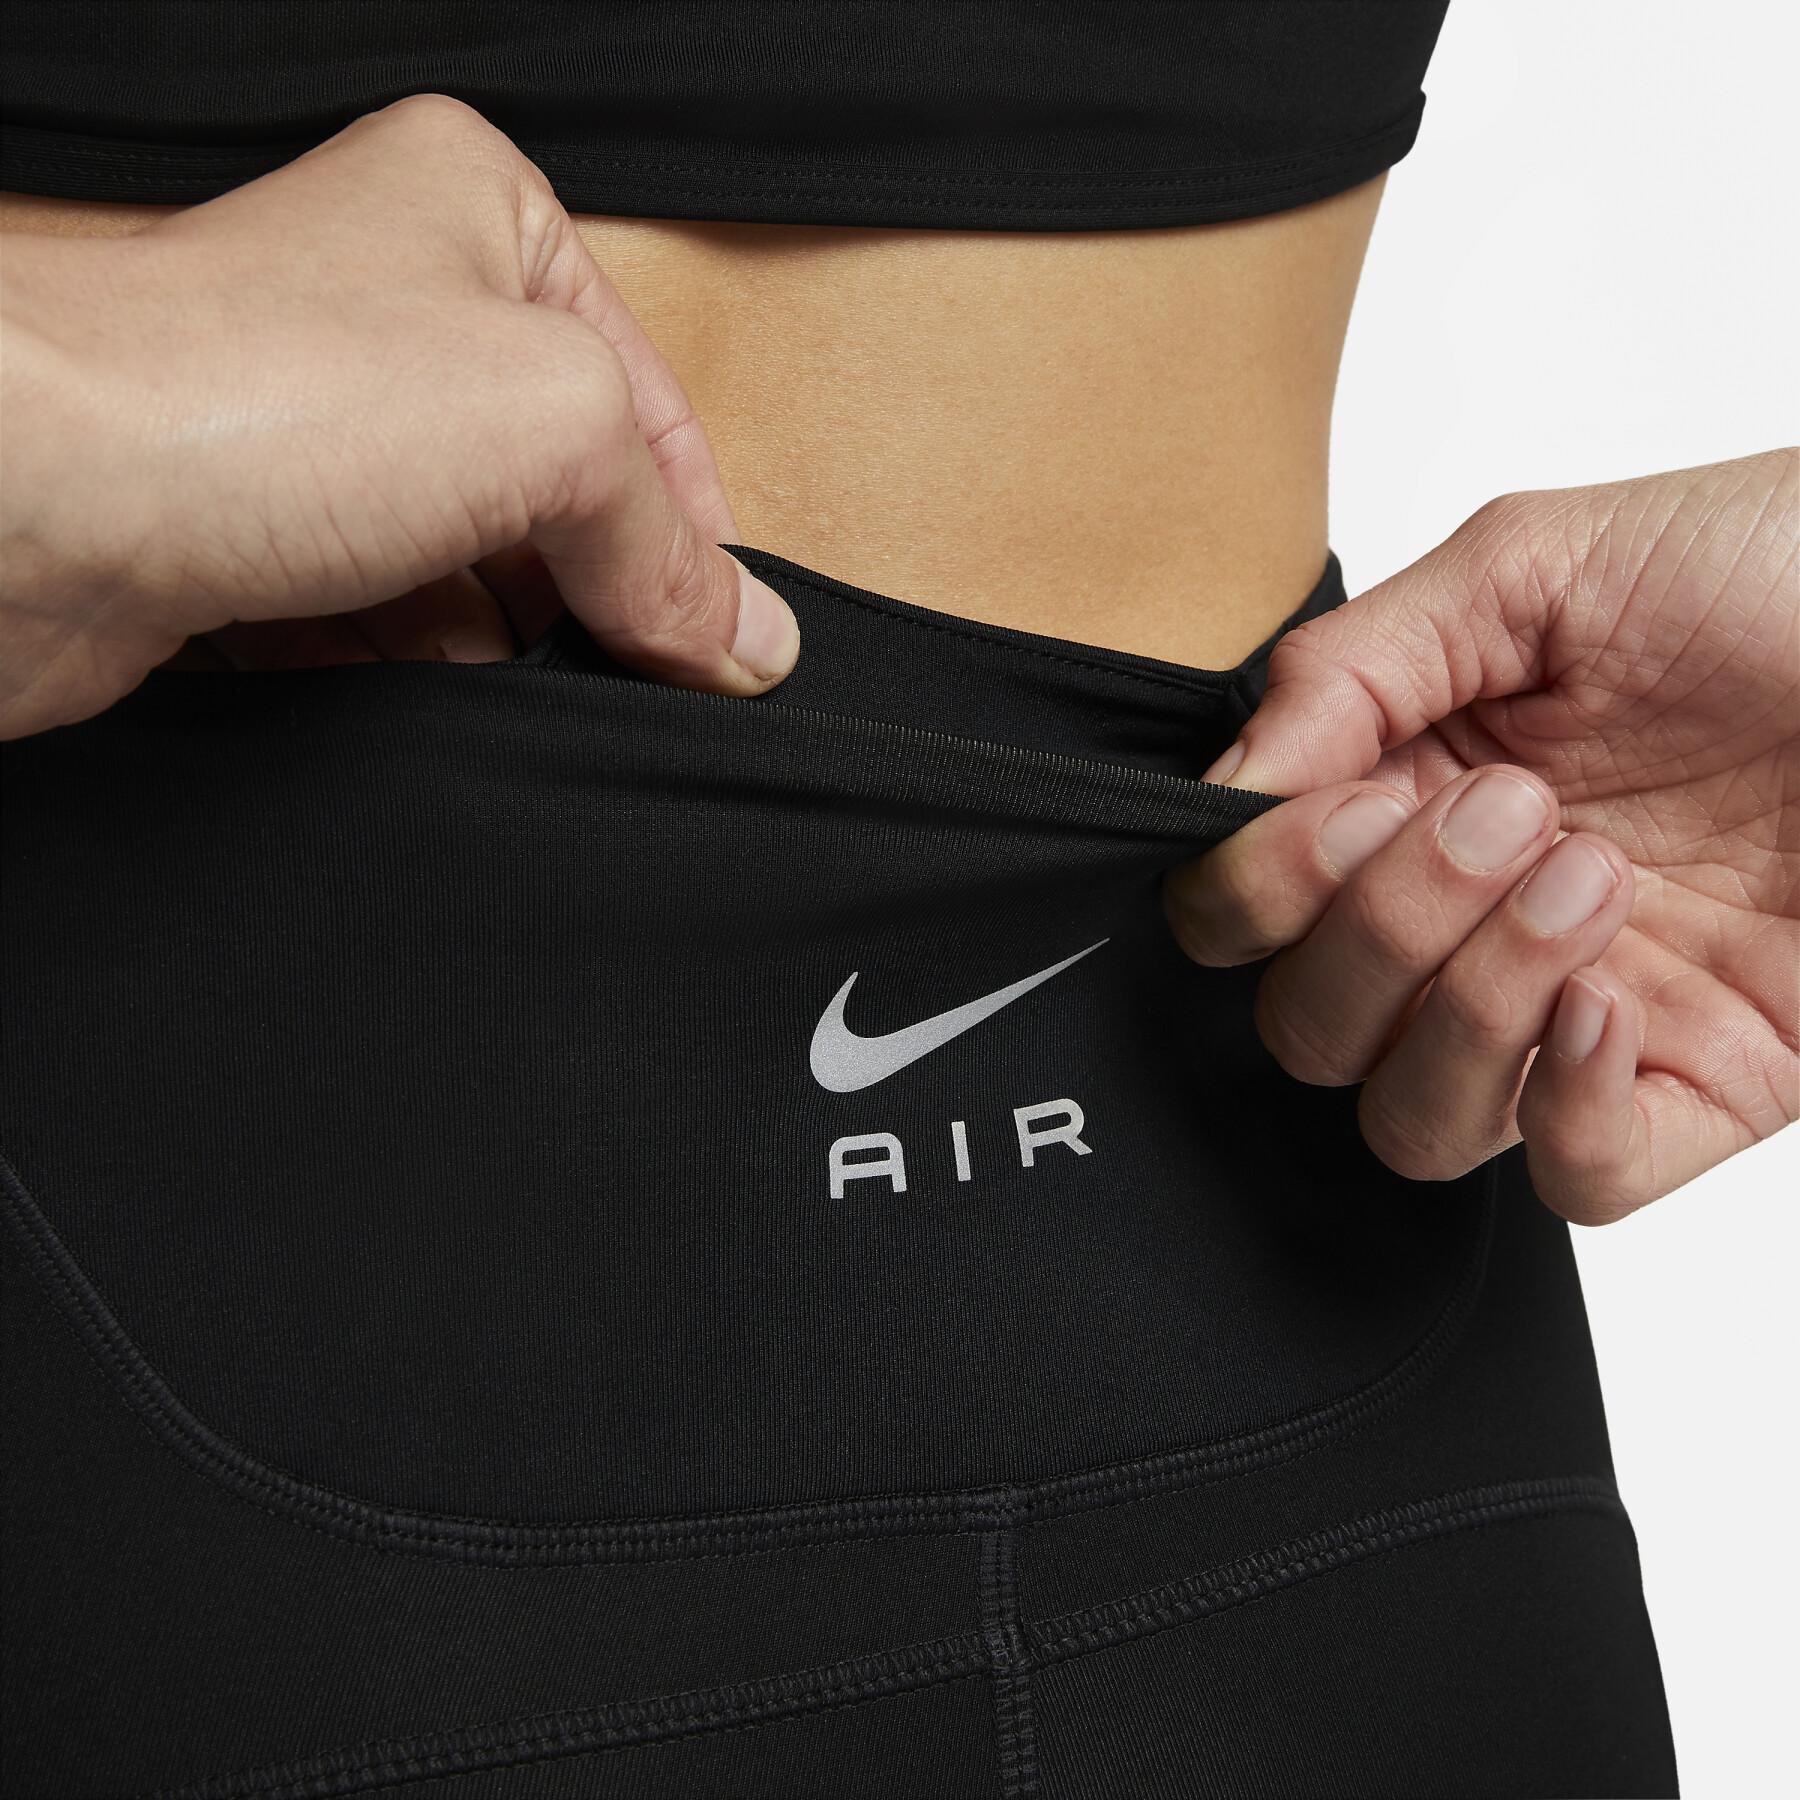 Botas femininas de coxa alta Nike Dri-FIT Air 7 "